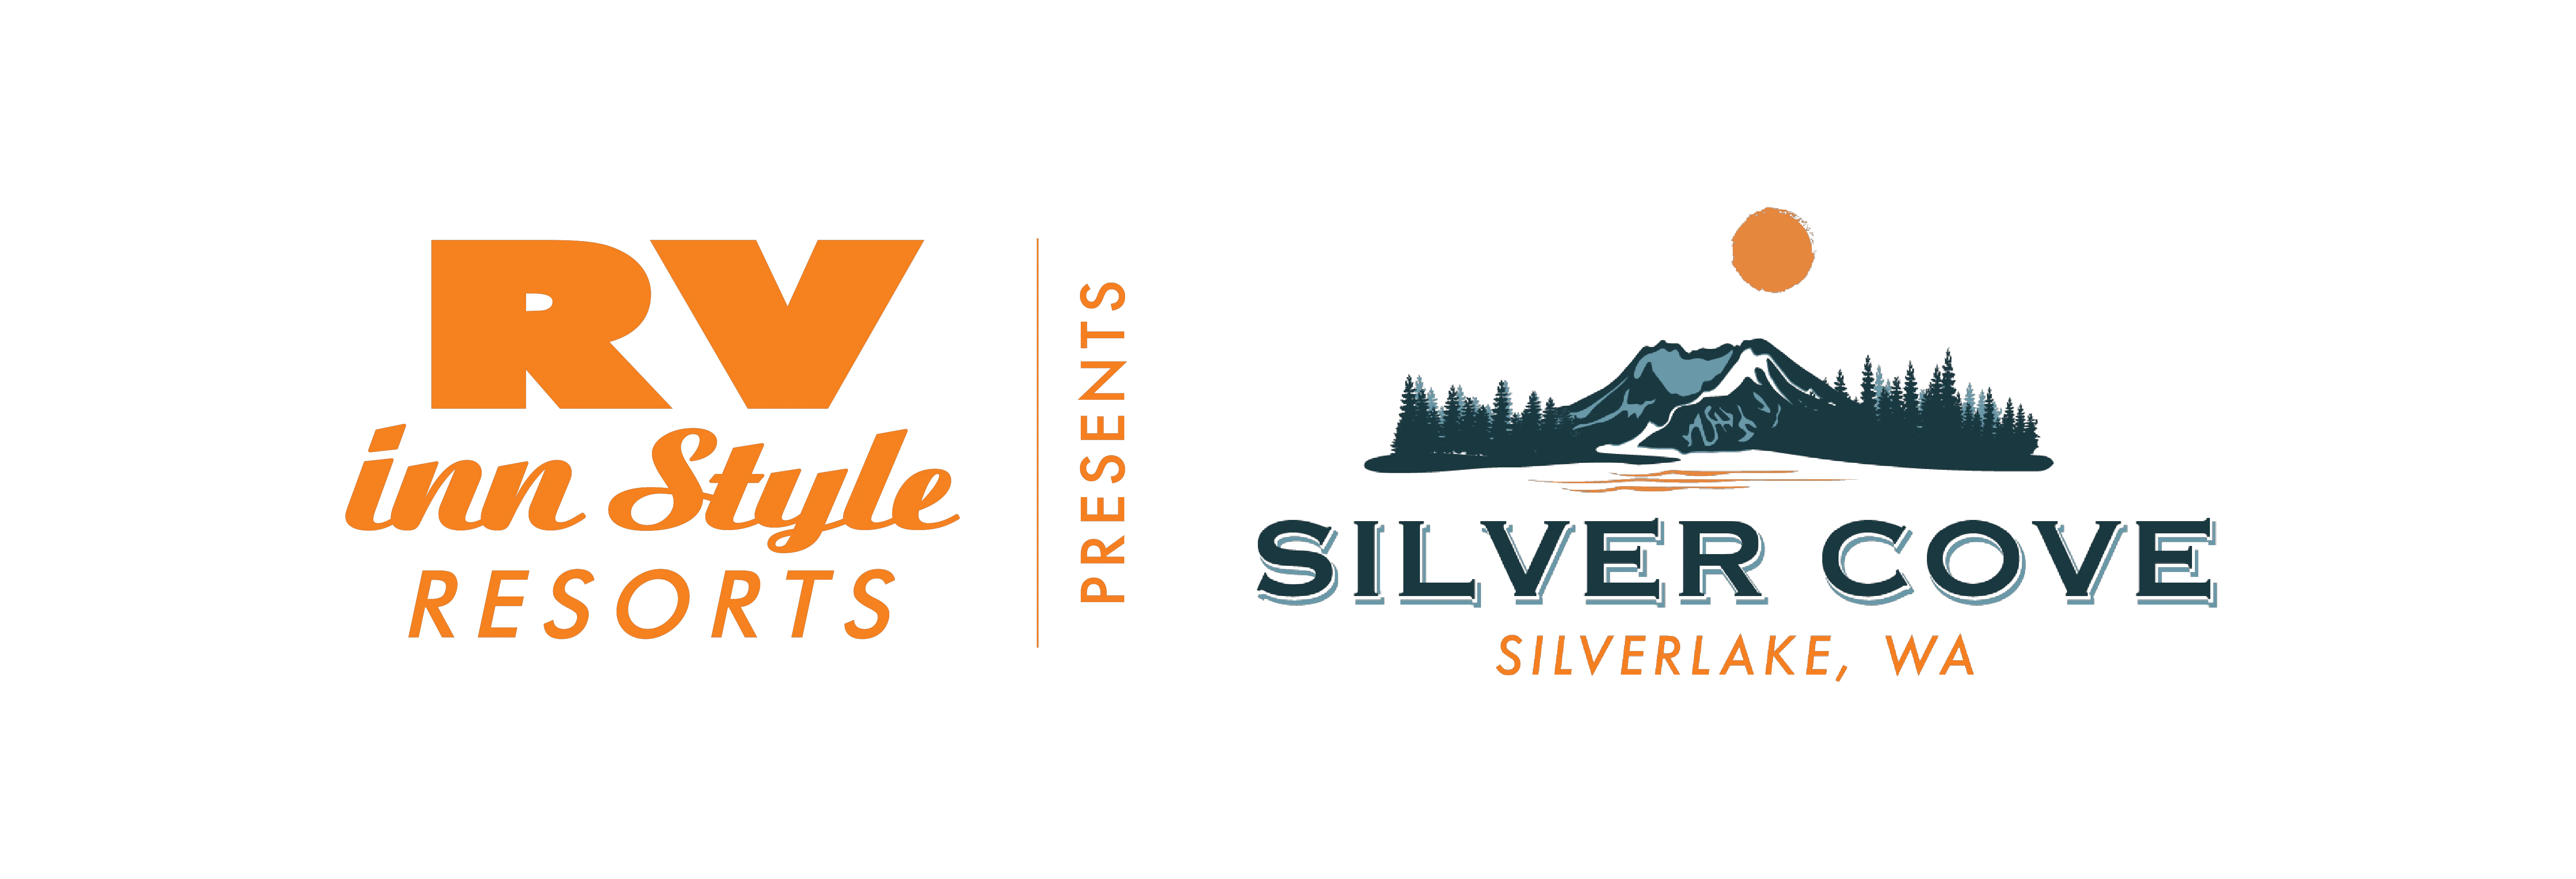 Silver Cove RV Resort